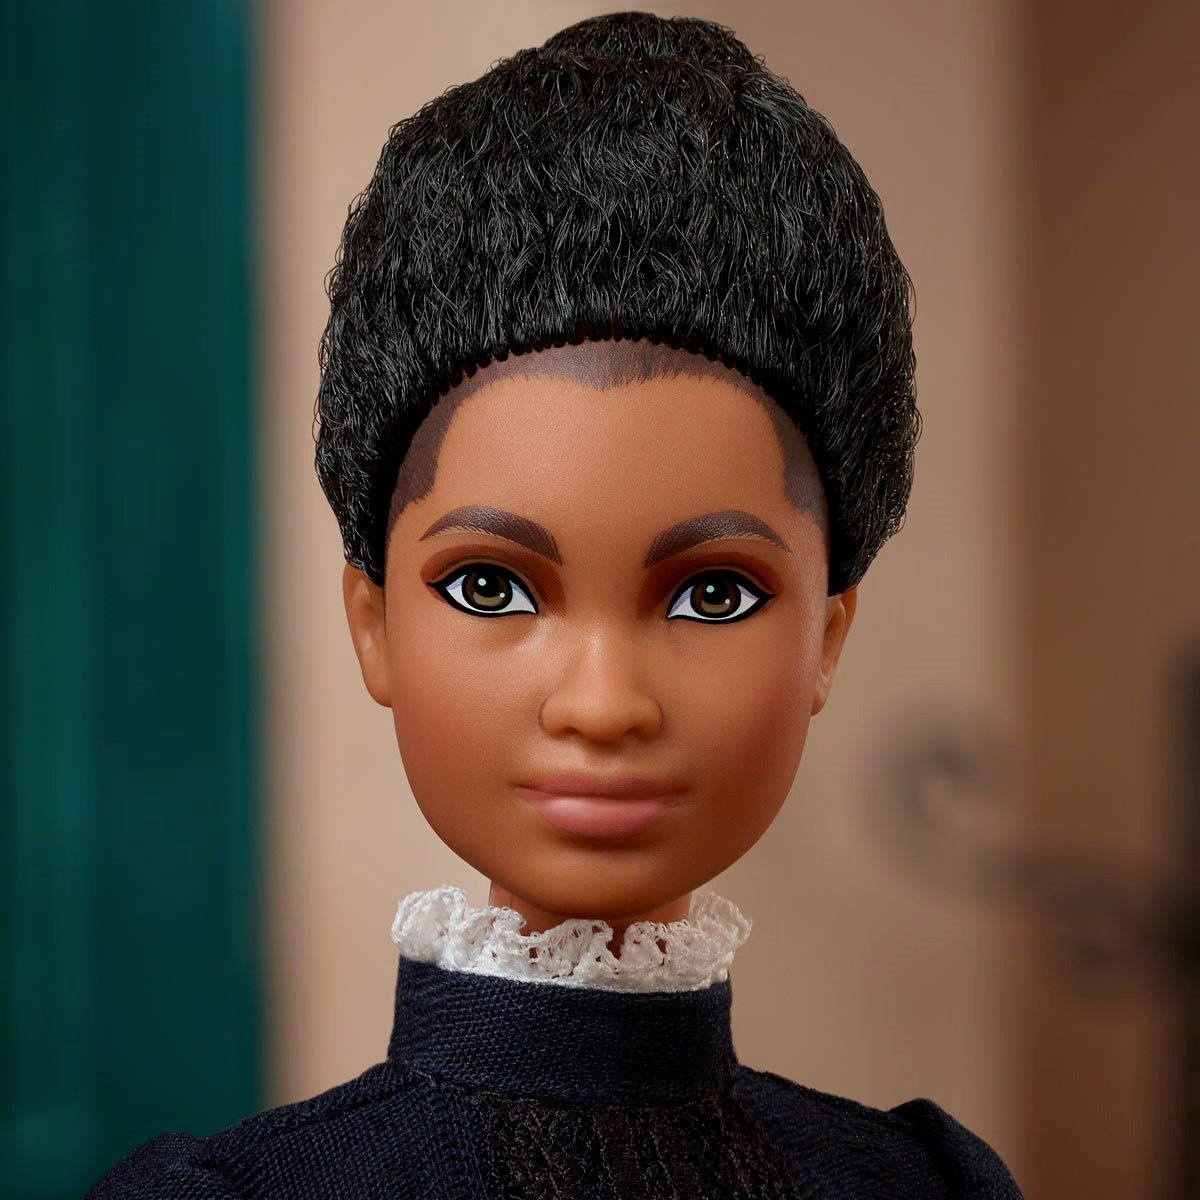 Barbie Inspiring Women: Ida B. Wells, Precursora do Movimento dos Direitos Civis